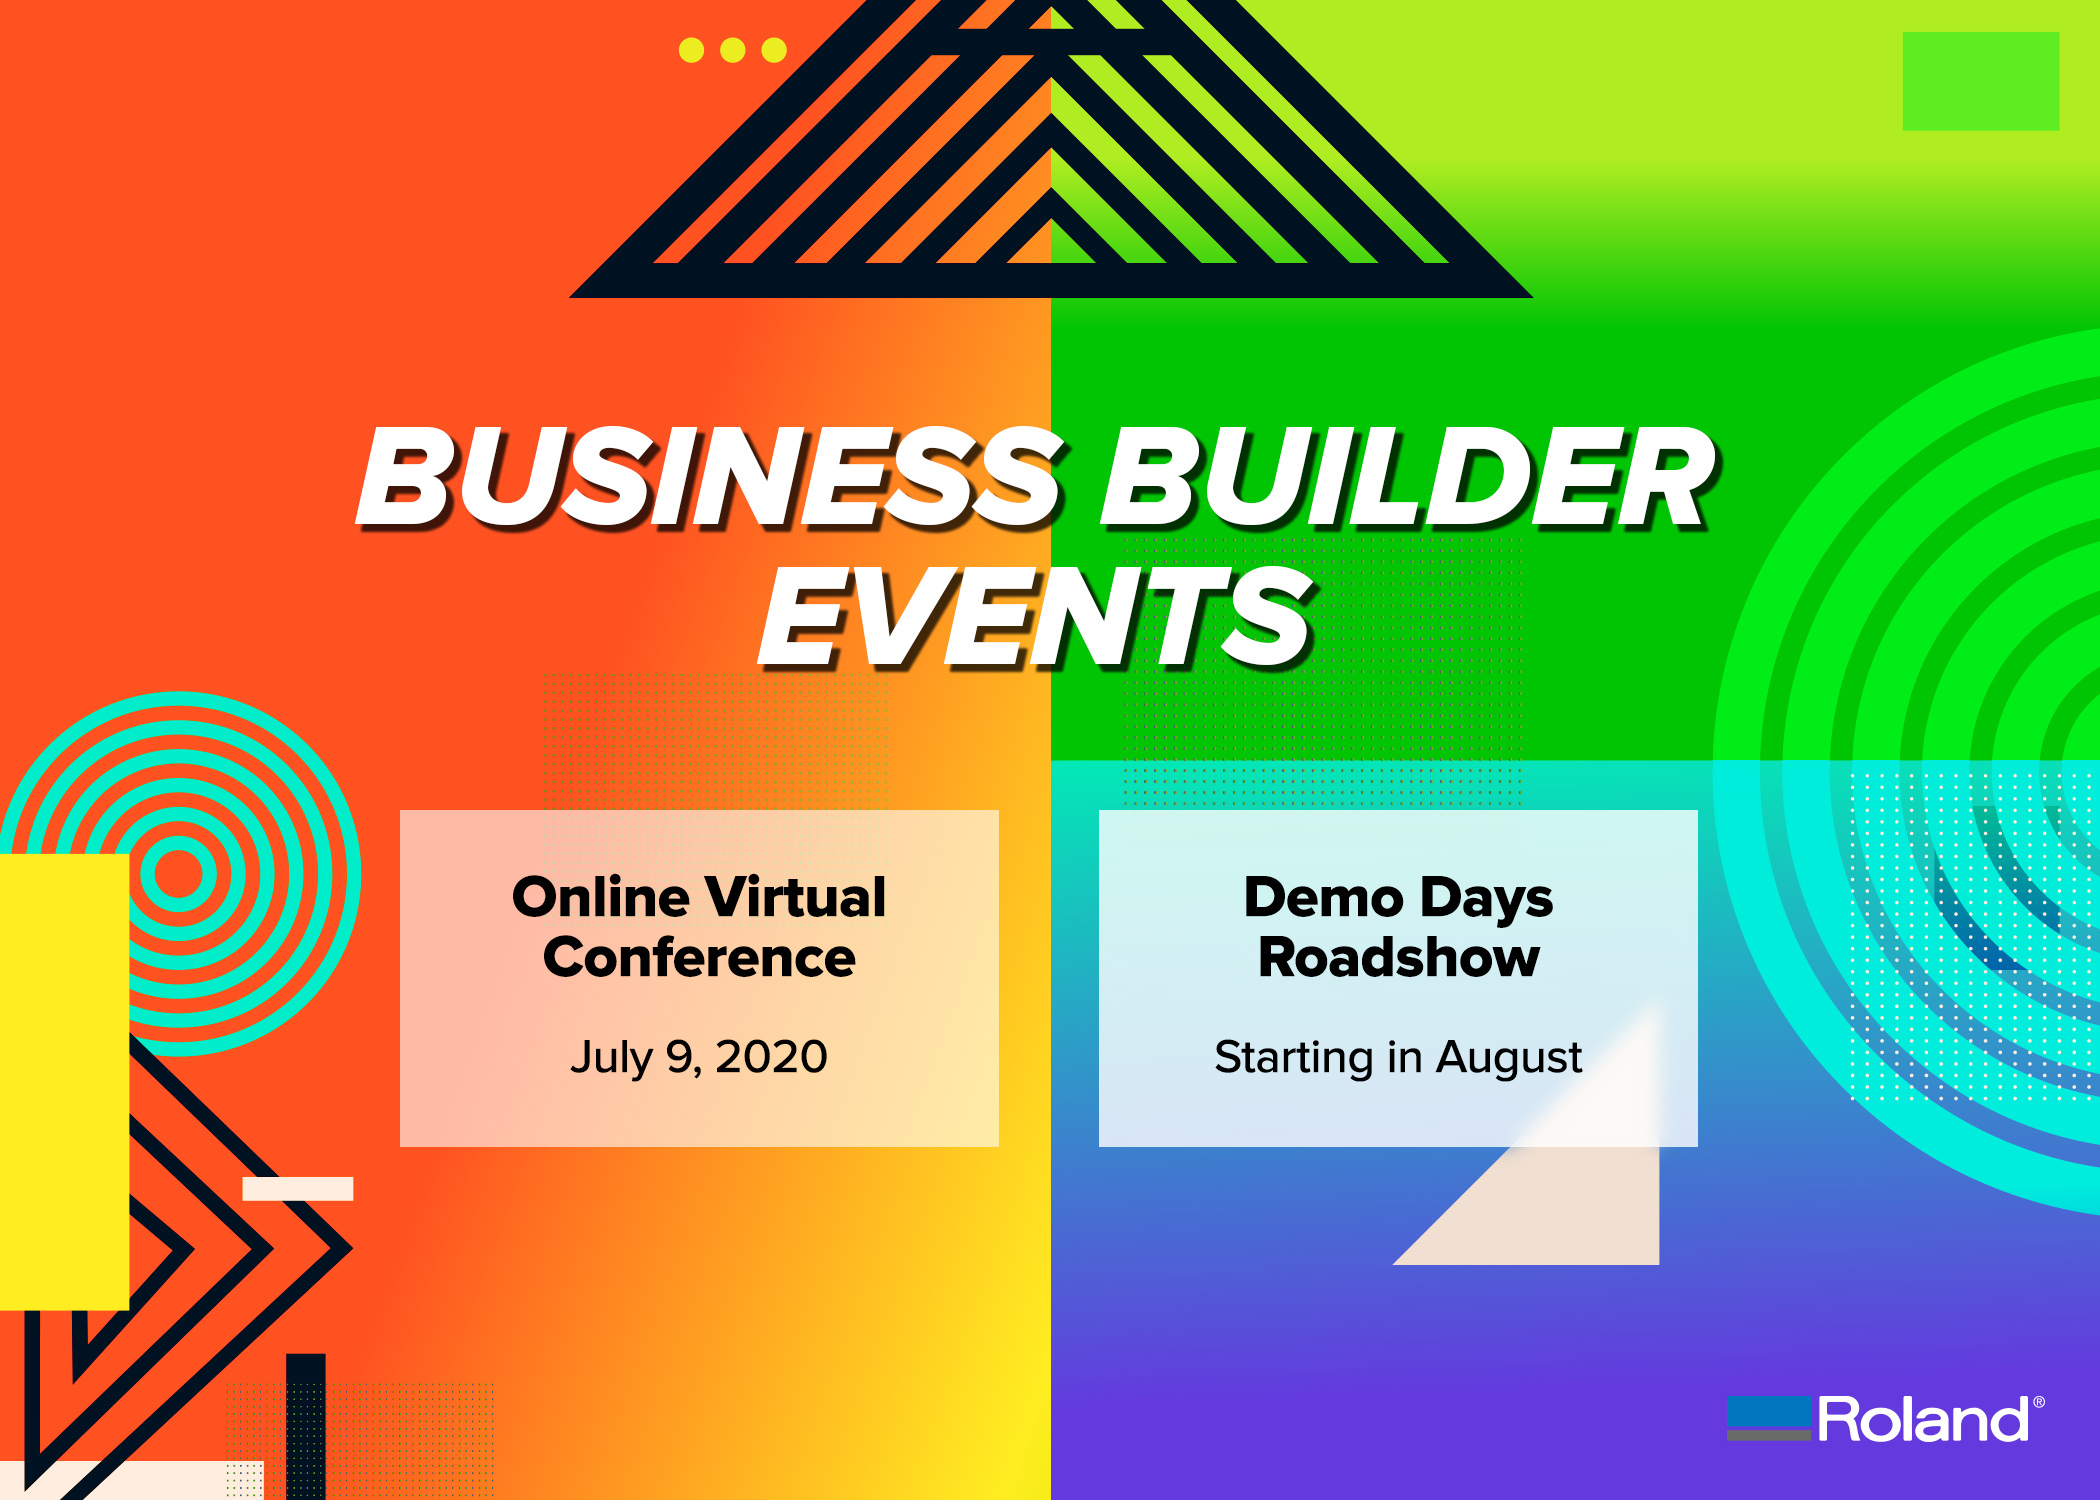 Roland DGA Anuncia su Serie de Eventos Business Builder, Incluyendo Conferencias en Línea y Demo Days Road Show de Asistencia Limitada